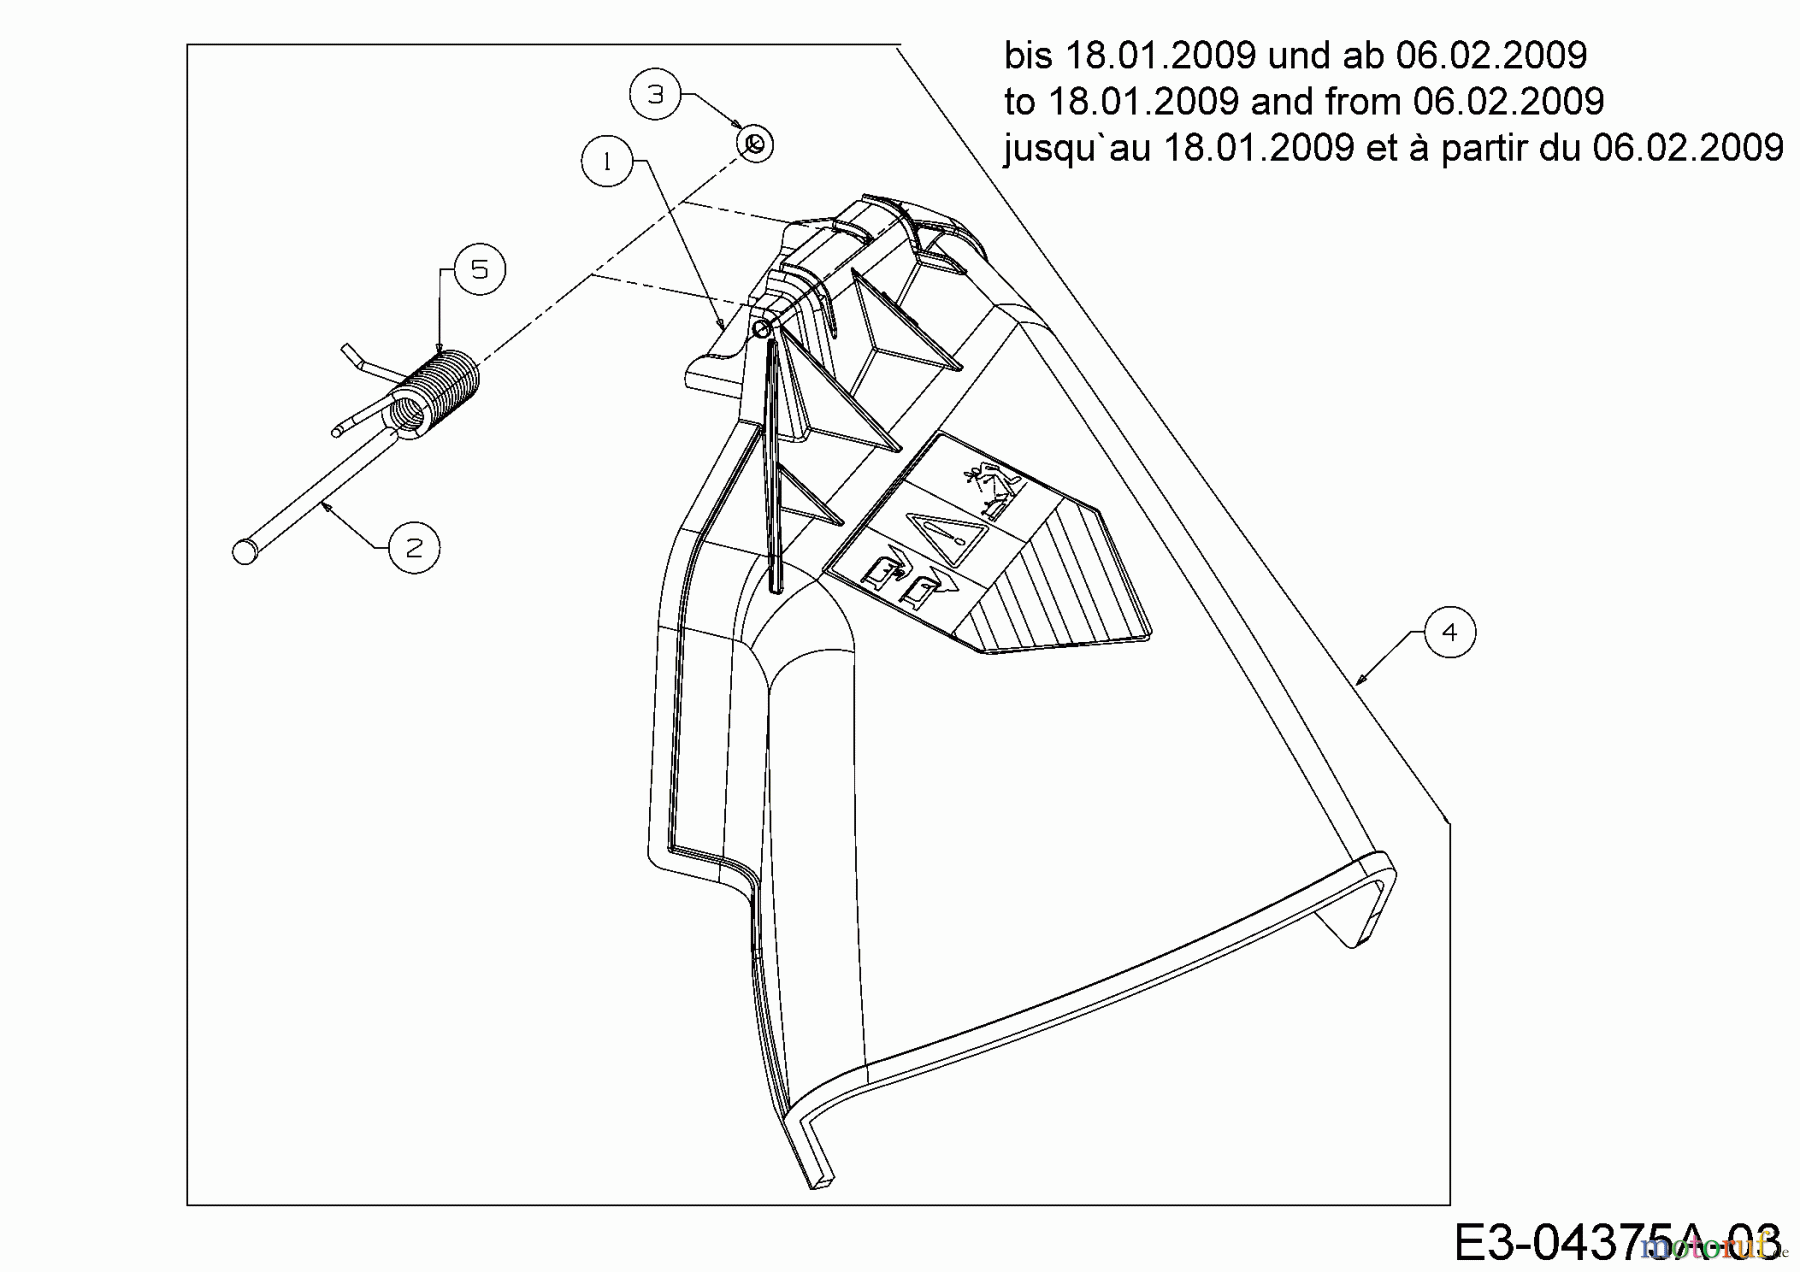  Sarp Rasentraktoren SL 135 BS 13AH768F498  (2009) Deflektor bis 18.01.2009 und ab 06.02.2009